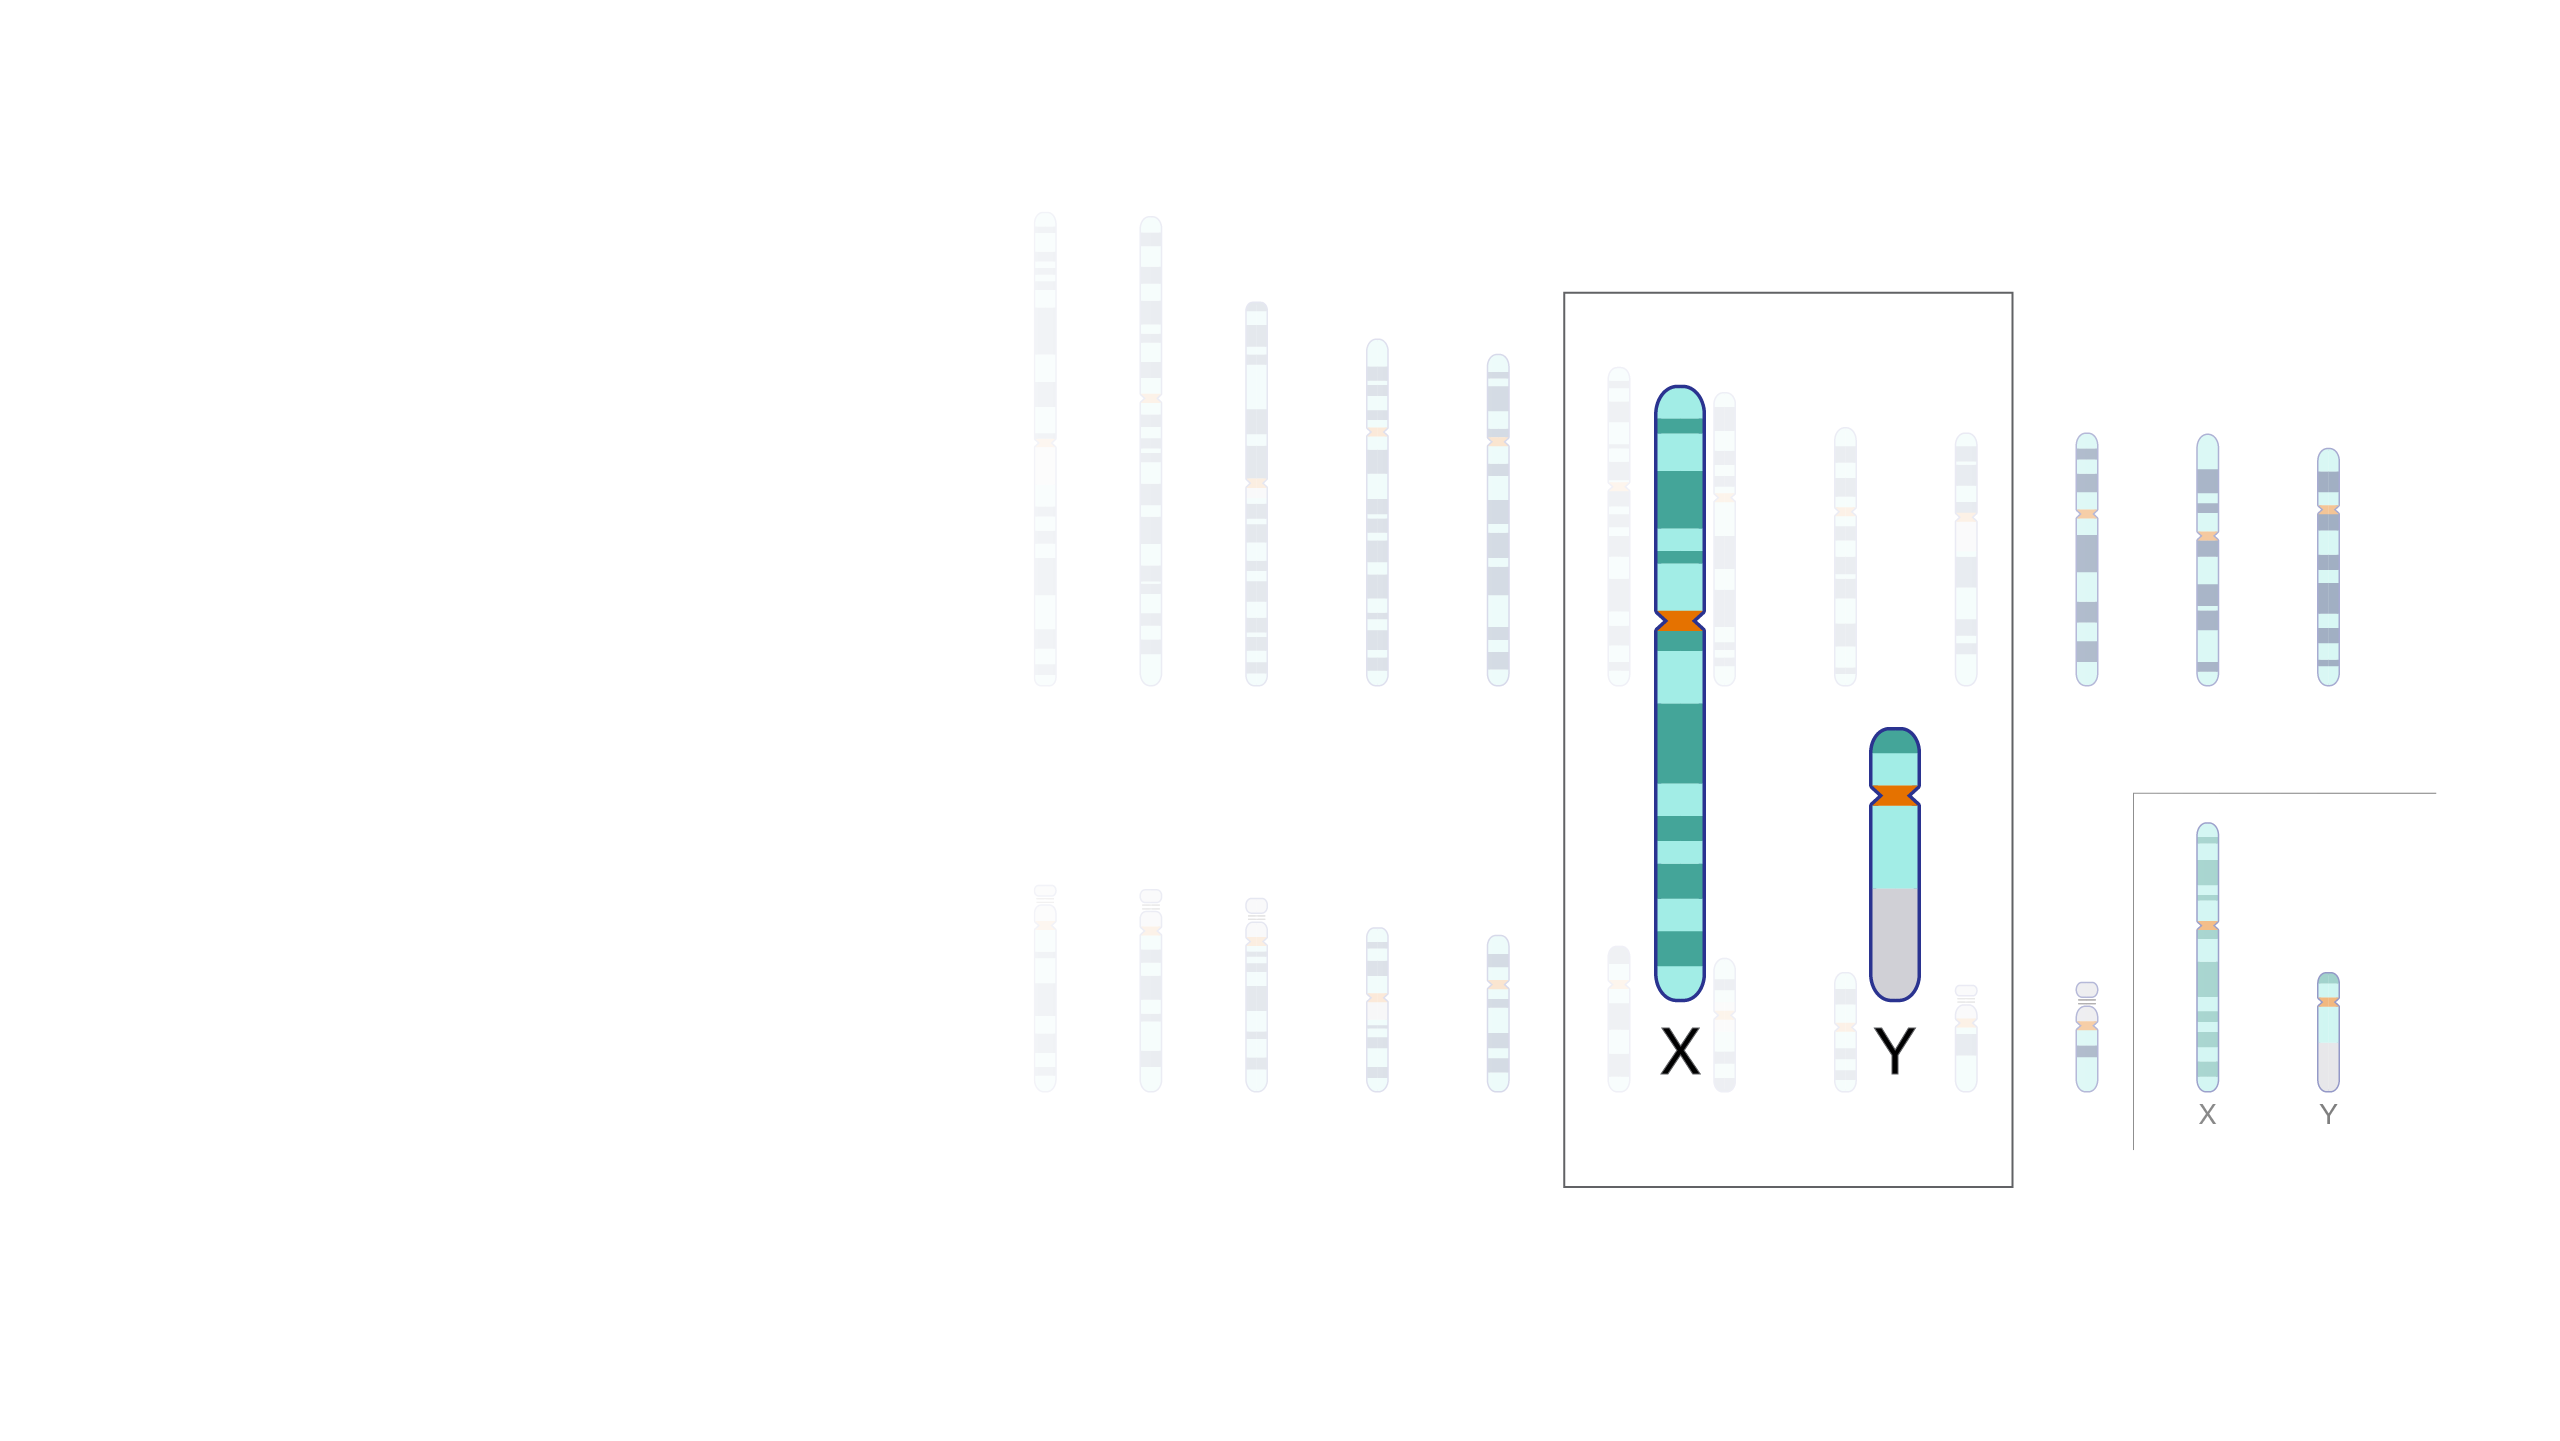 Zasma Wale Lades Xxx Hd Video - Sex Chromosome